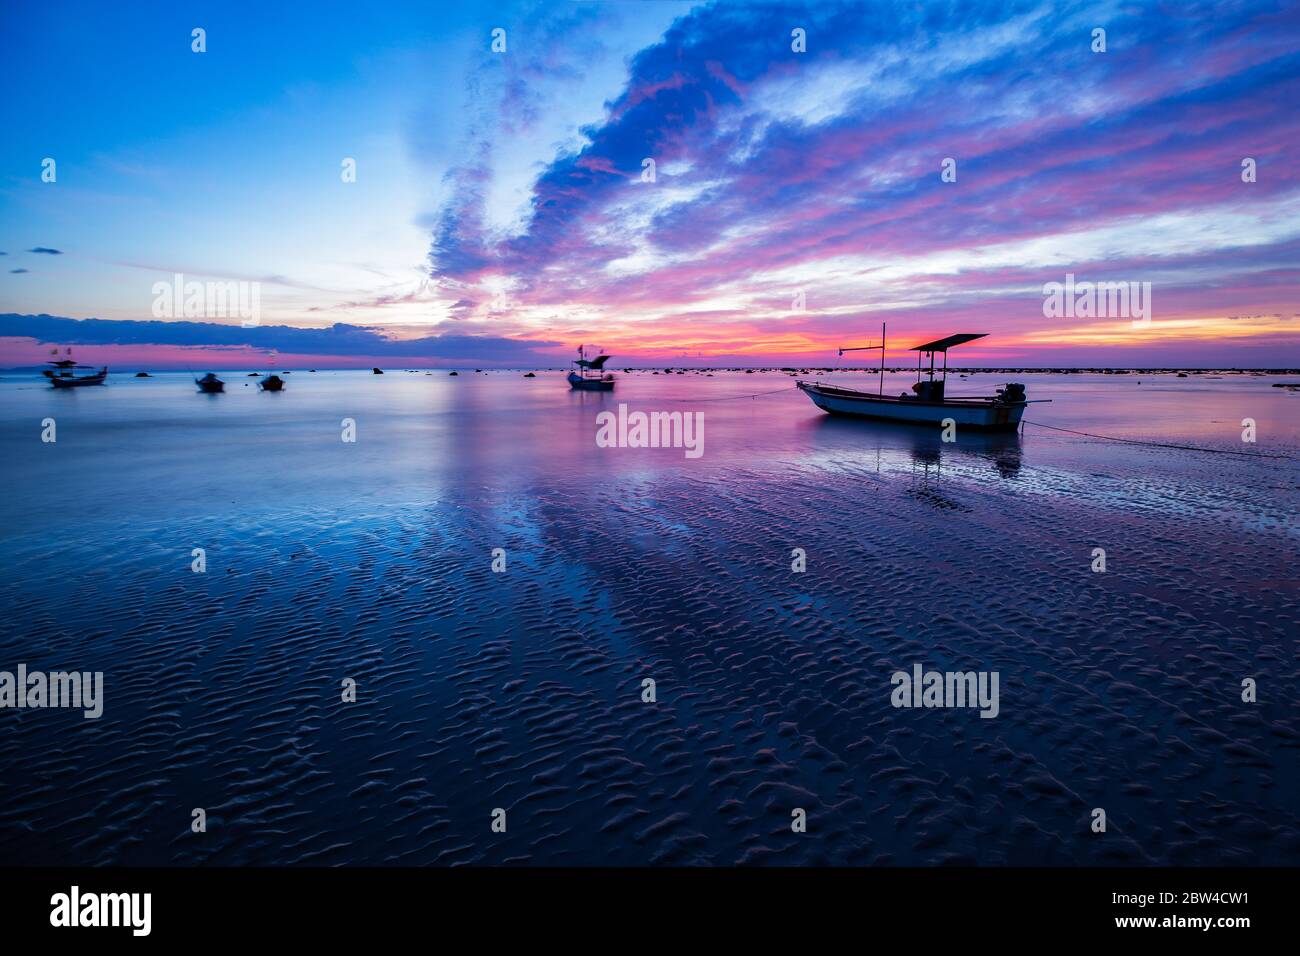 Paysage ciel coloré et bateaux de pêche amarrés tandis que la marée descend le soir à la plage de Pakarang, Takuapa, Phang Nga, Thaïlande Banque D'Images